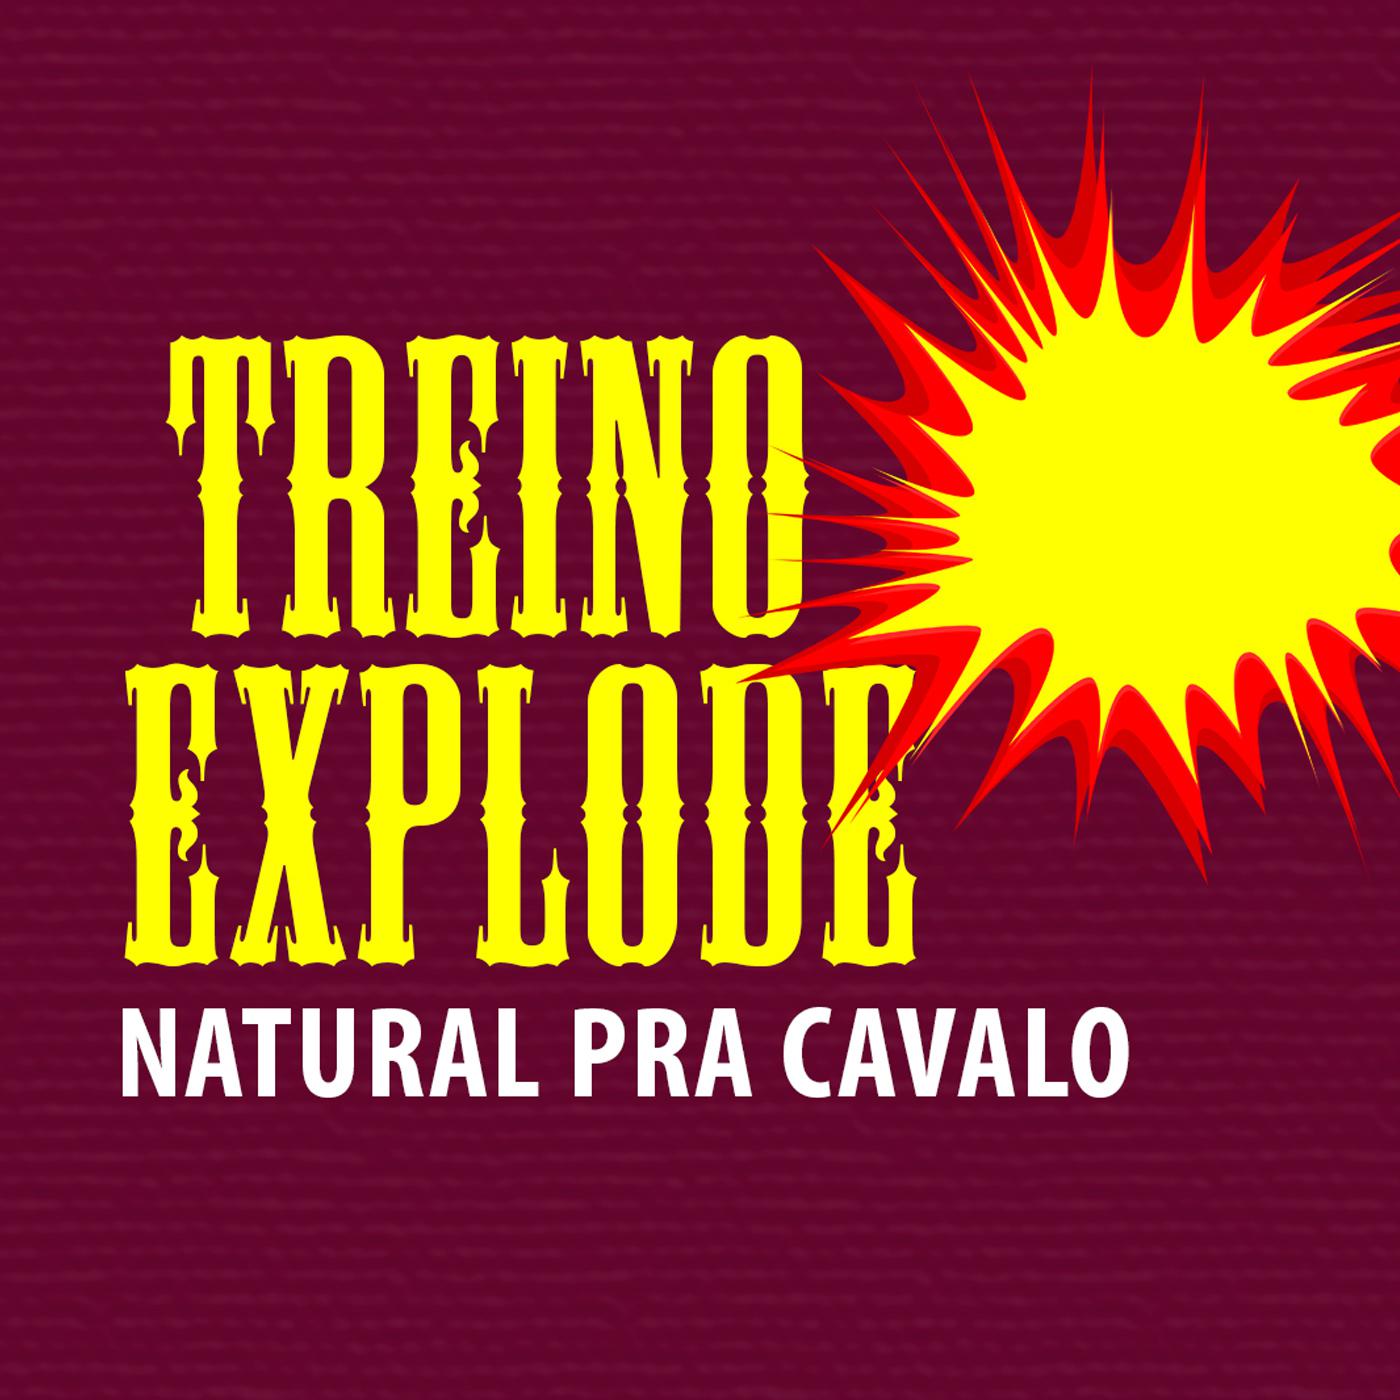 Treino Explode: Natural pra Cavalo